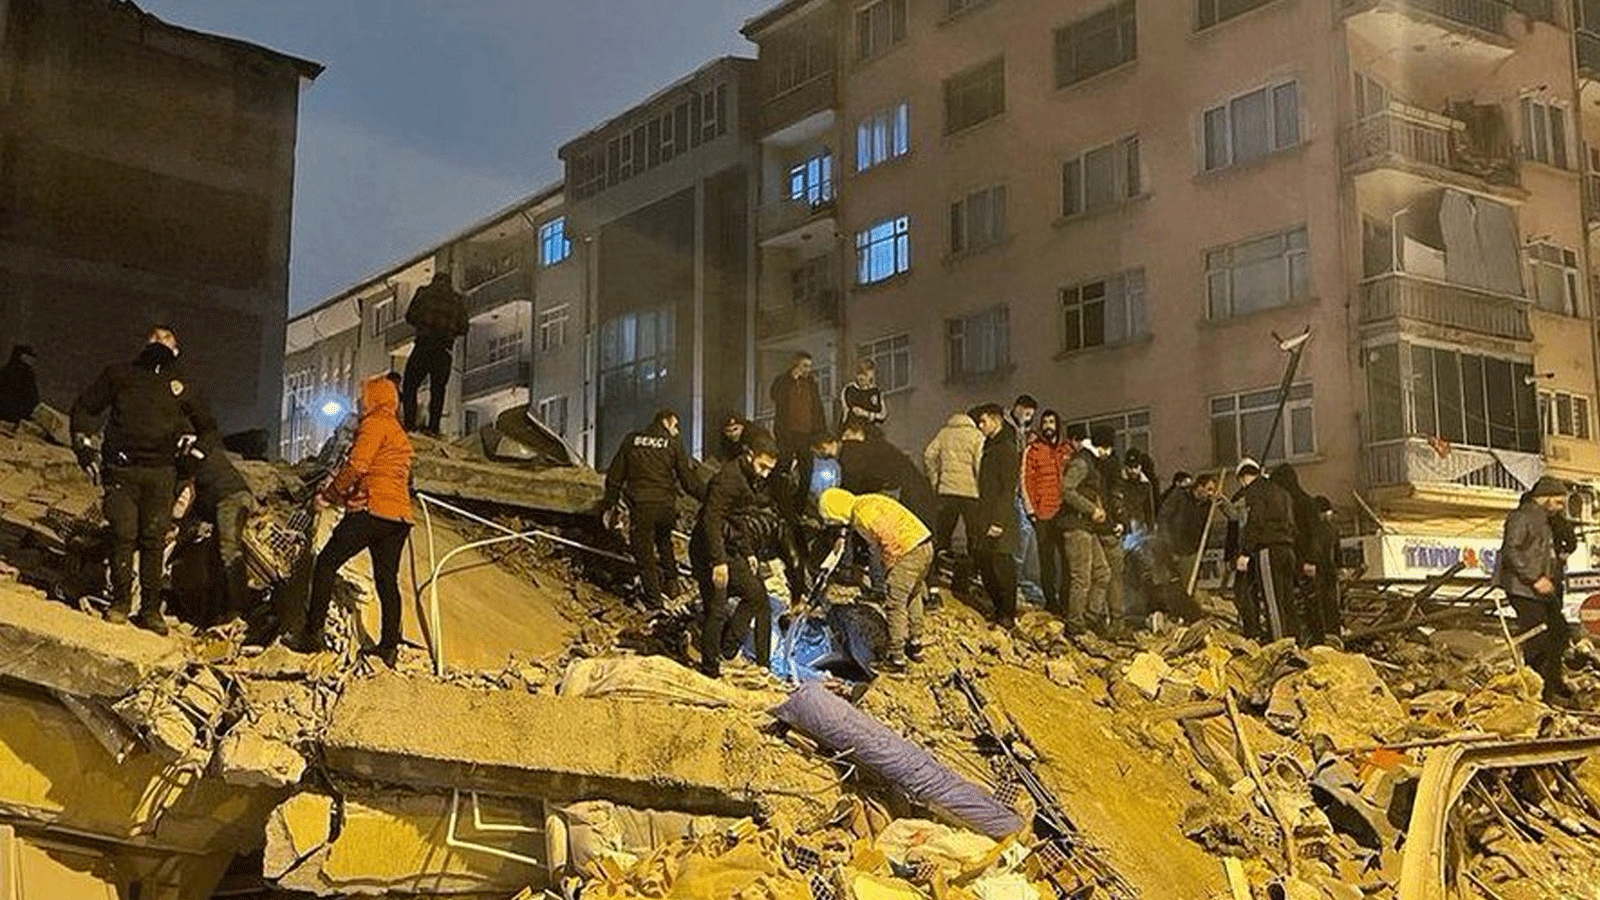 لقطة من مخلفات الأضرار في المناطق المنكوبة في تركيا(تويتر)